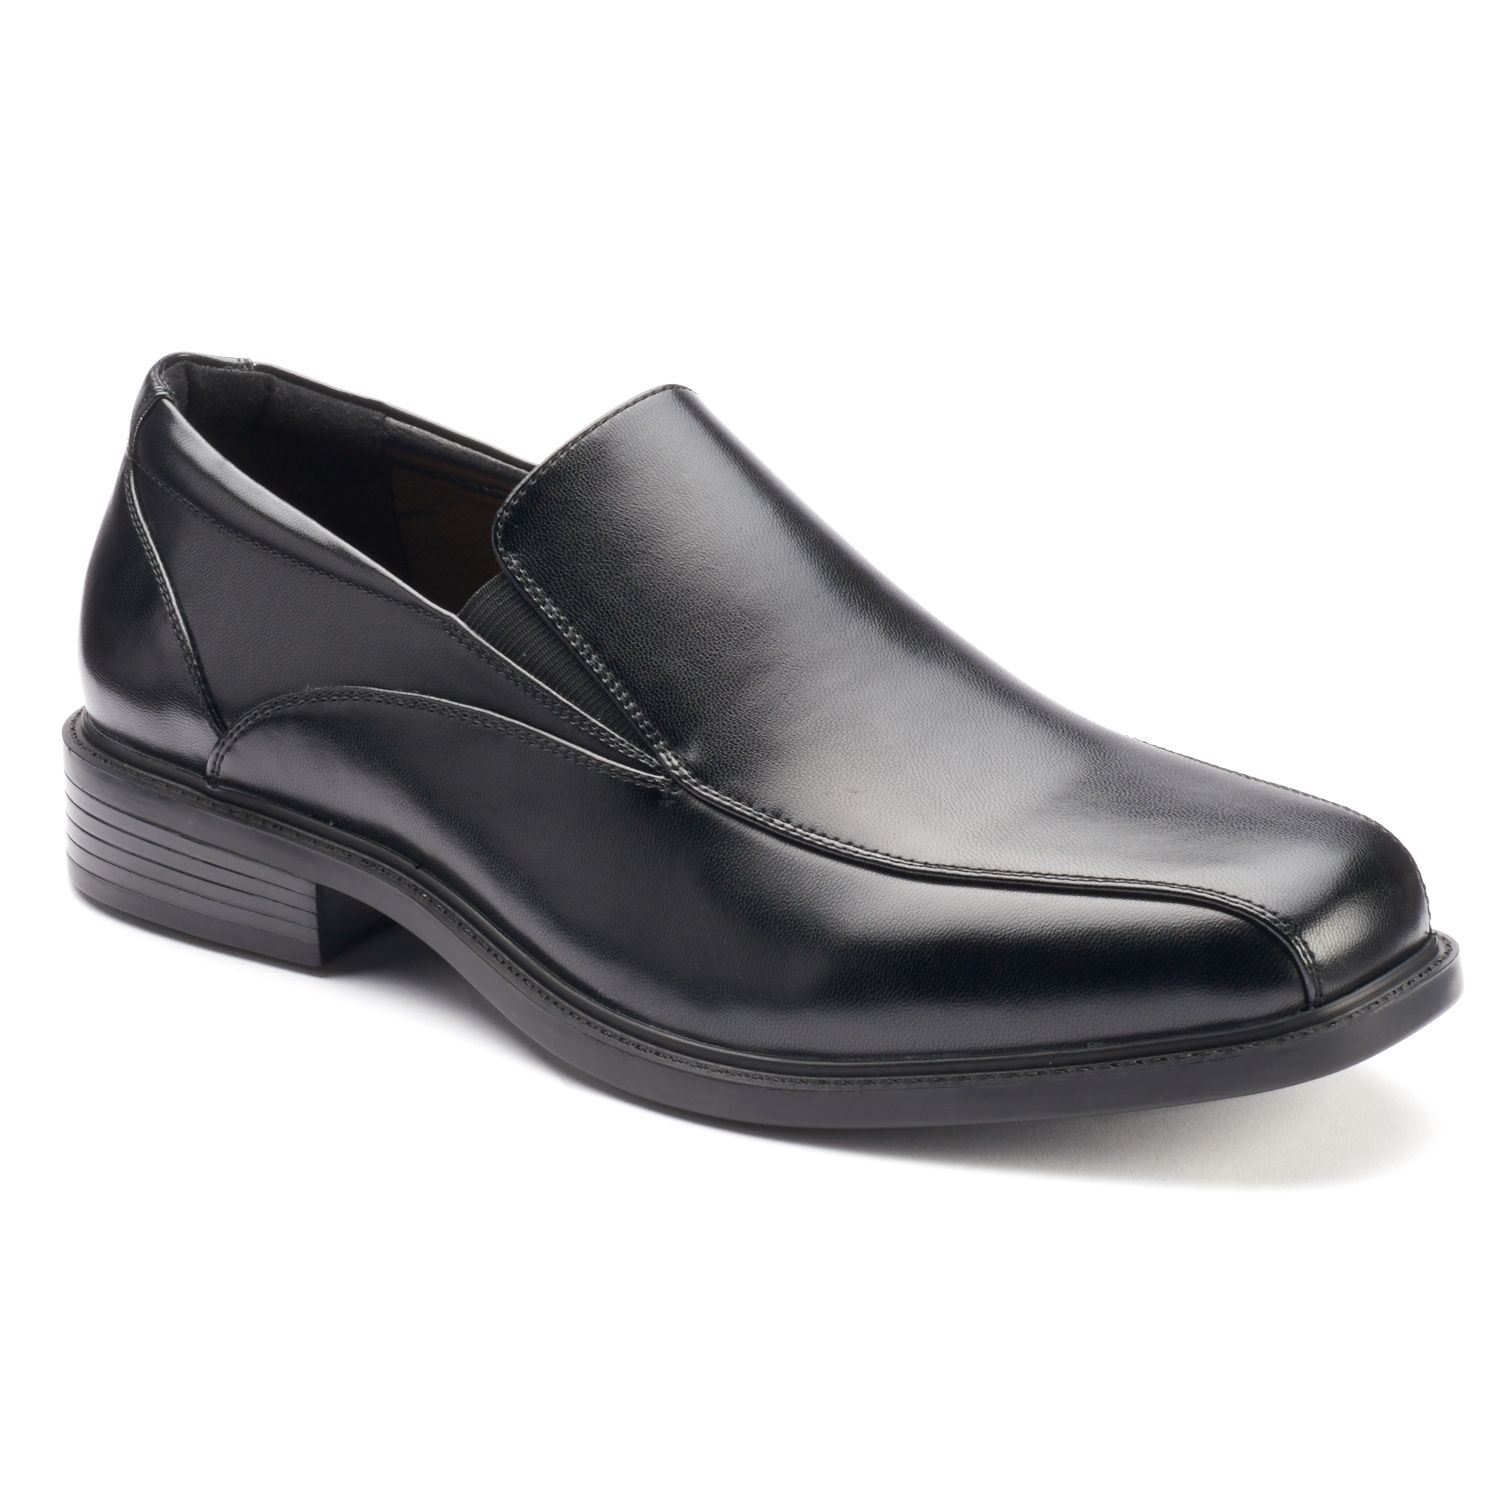 Men's Black Dress Shoes | Kohl's